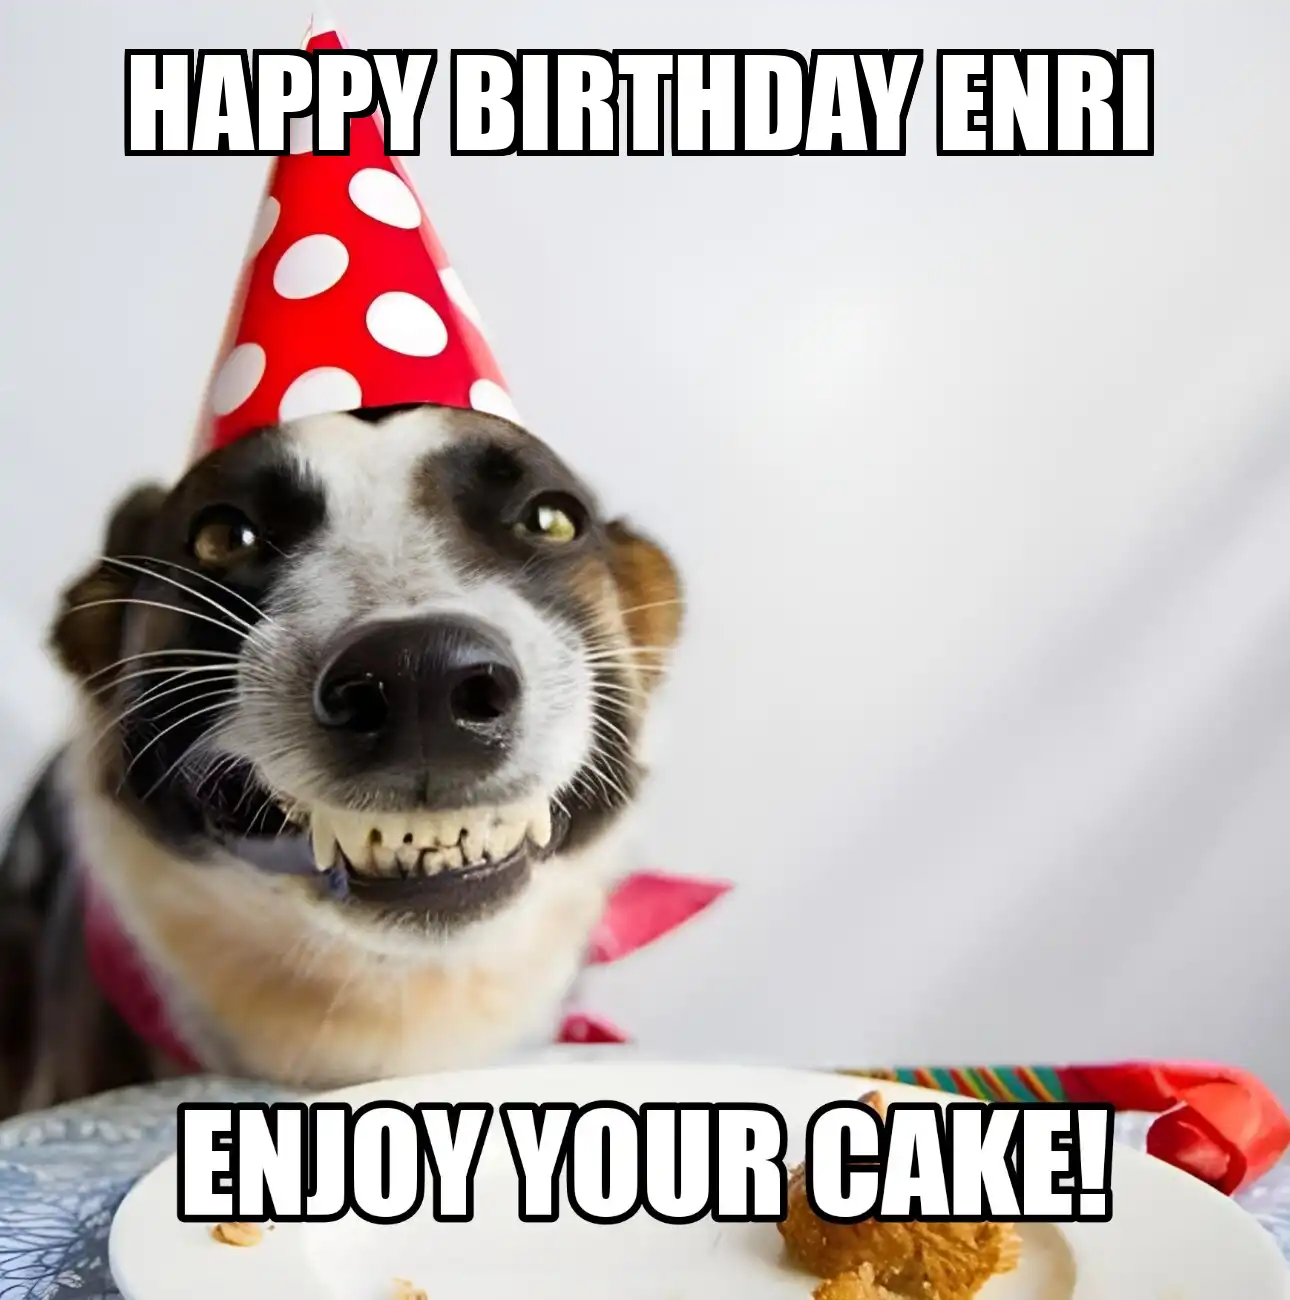 Happy Birthday Enri Enjoy Your Cake Dog Meme